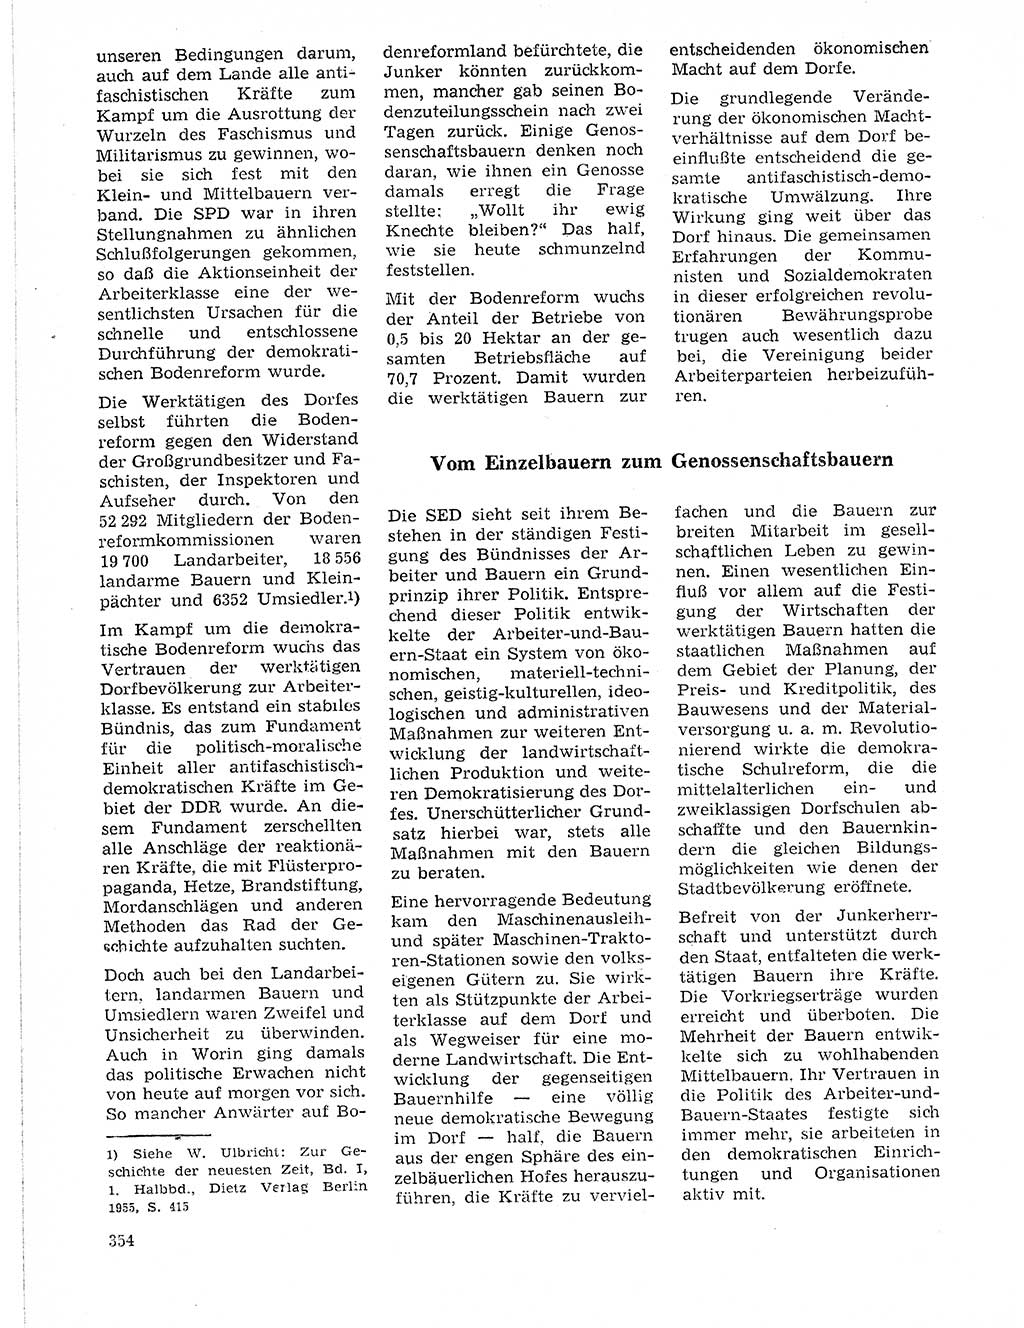 Neuer Weg (NW), Organ des Zentralkomitees (ZK) der SED (Sozialistische Einheitspartei Deutschlands) für Fragen des Parteilebens, 21. Jahrgang [Deutsche Demokratische Republik (DDR)] 1966, Seite 354 (NW ZK SED DDR 1966, S. 354)